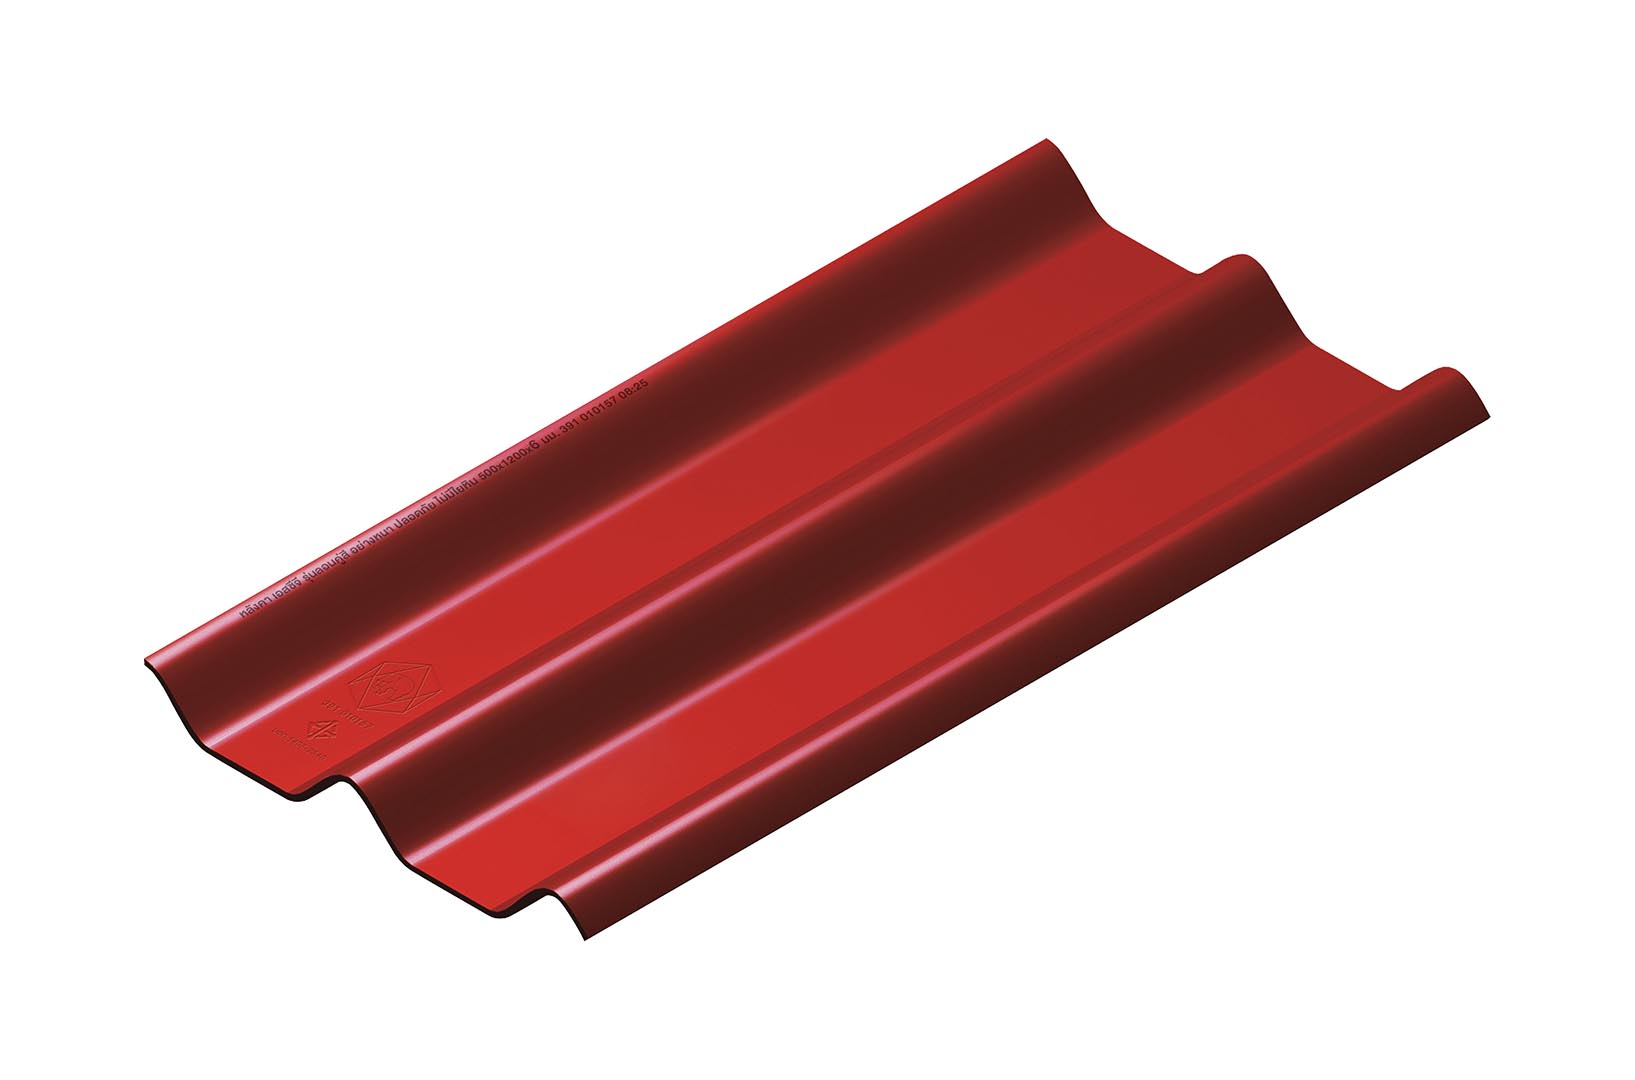 หลังคาไฟเบอร์ซีเมนต์ เอสซีจี รุ่น ลอนคู่ไฮบริด 50x150x0.55 สีแดง 1